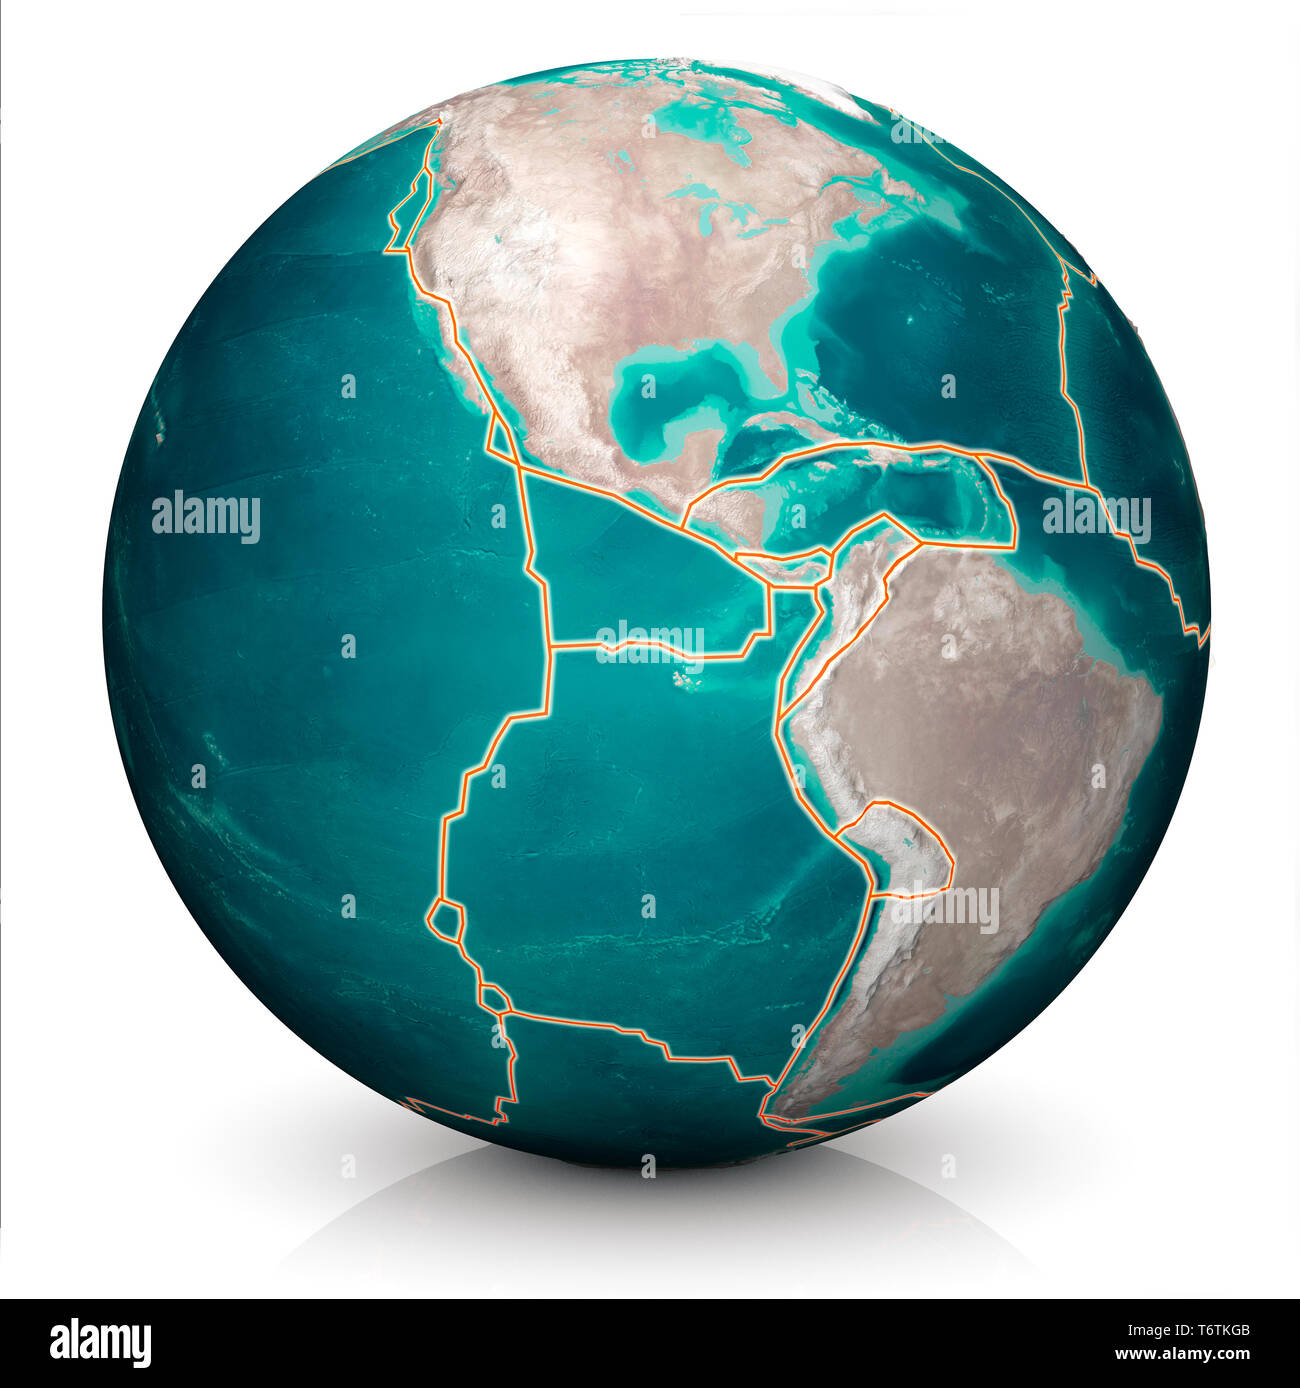 Tektonische Platten bewegen sich ständig, neue Bereiche der Meeresboden, Gebäude, Berge, Erdbeben und Vulkane zu schaffen. Karte. Stockfoto